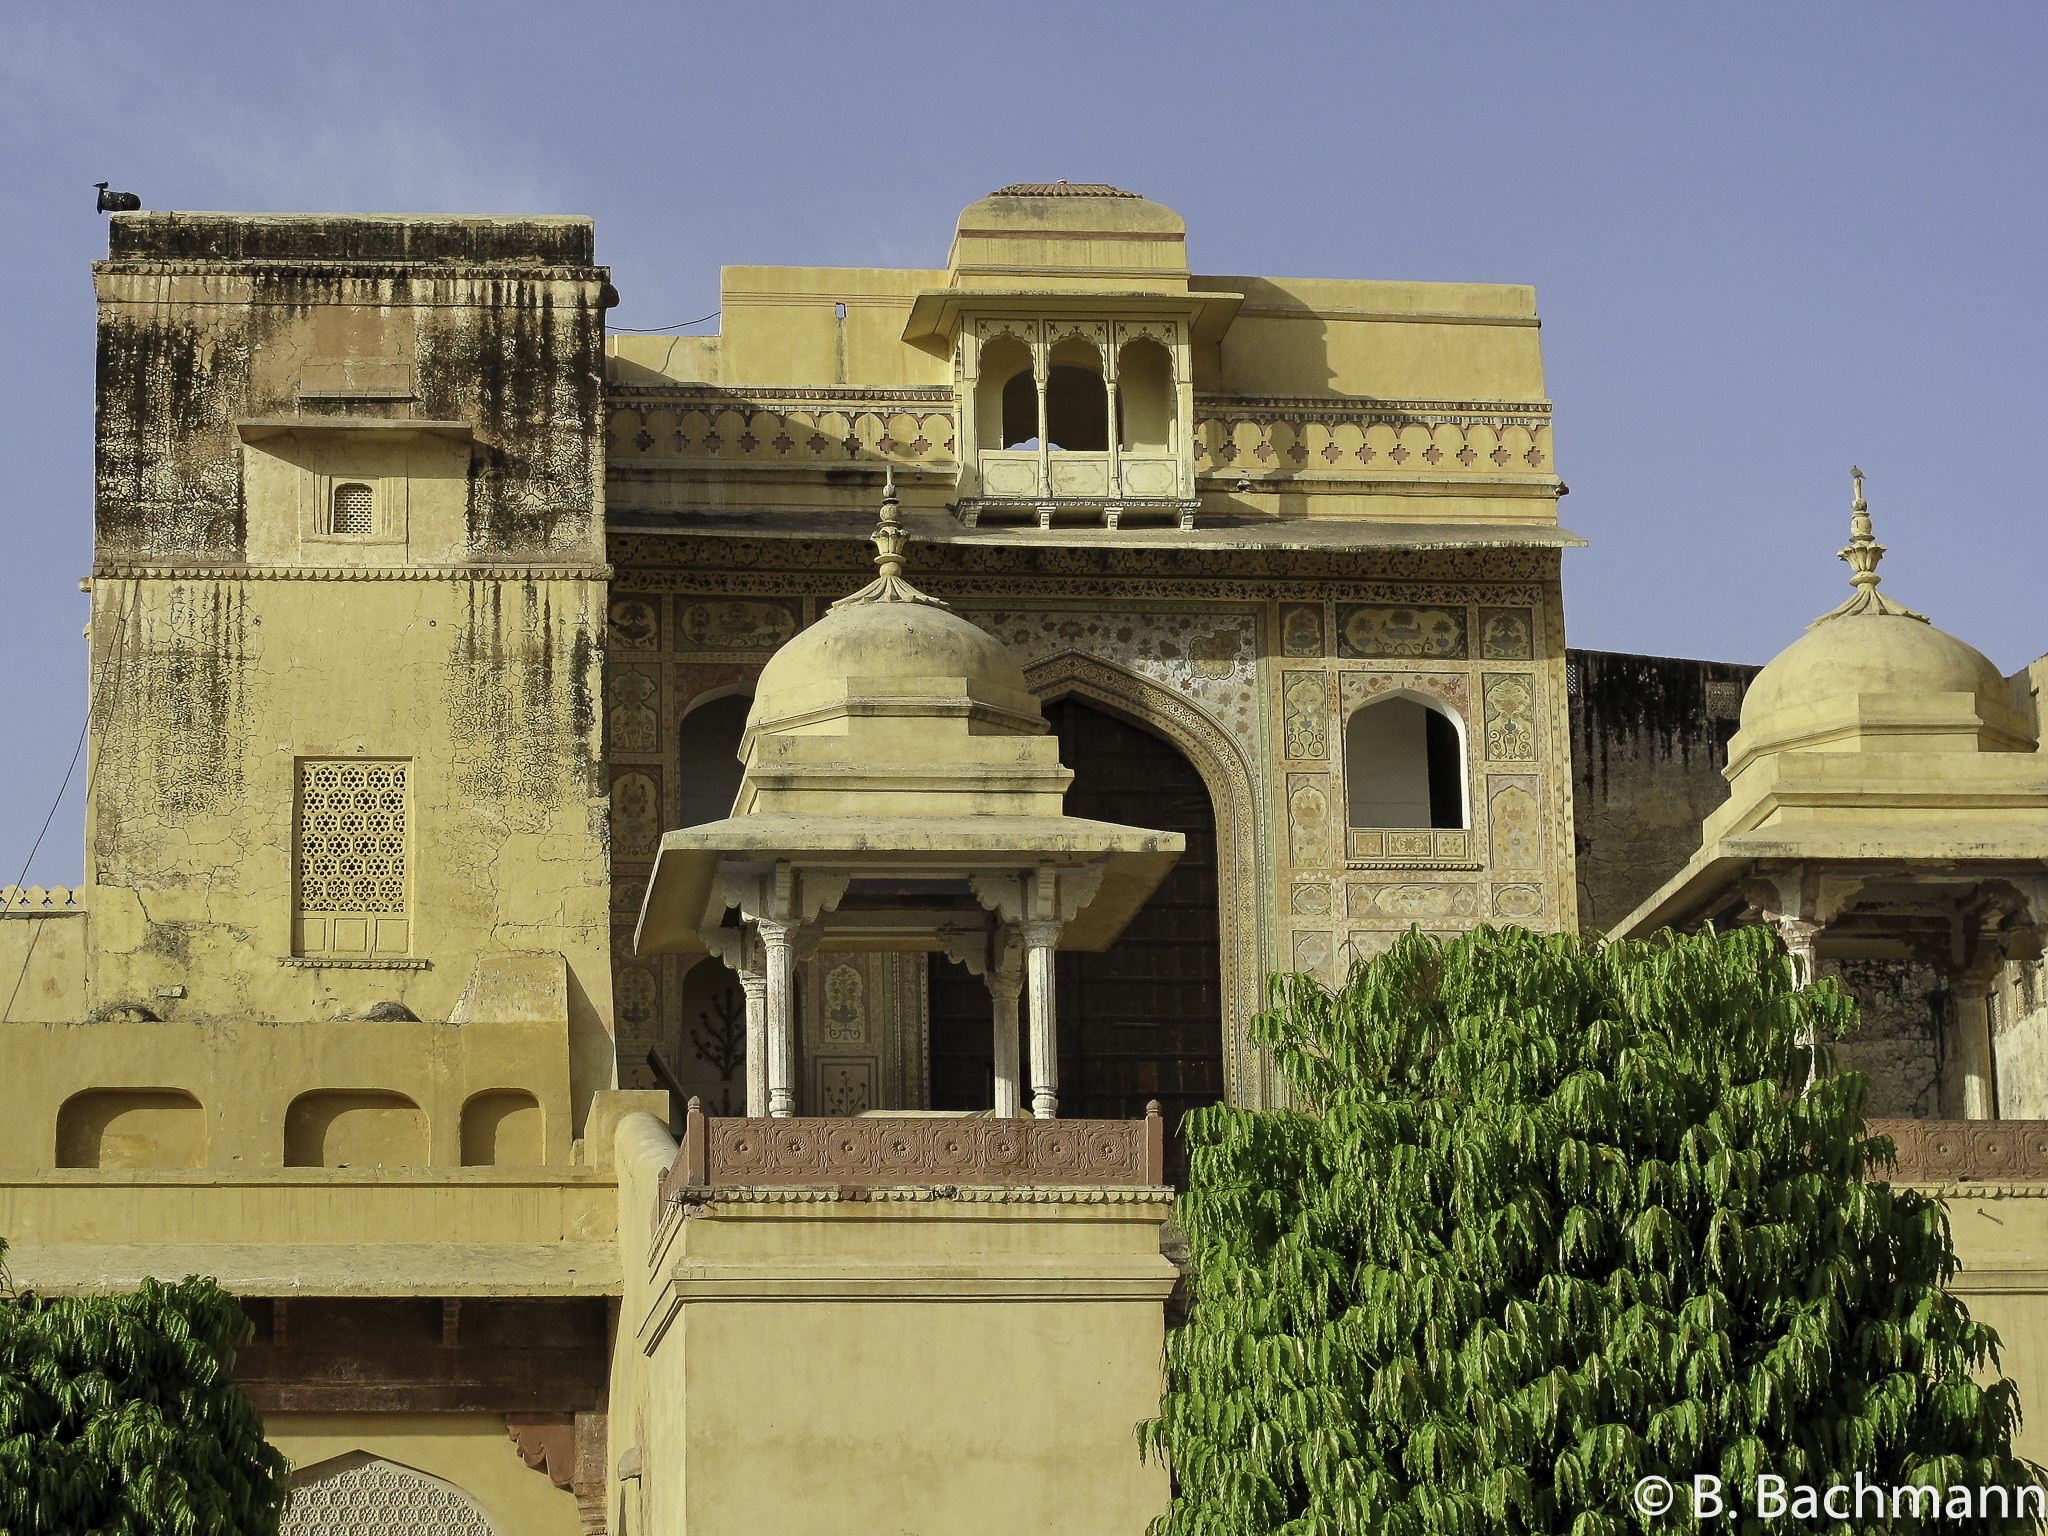 20100411_Jaipur_Fort-Amber_2231.jpg